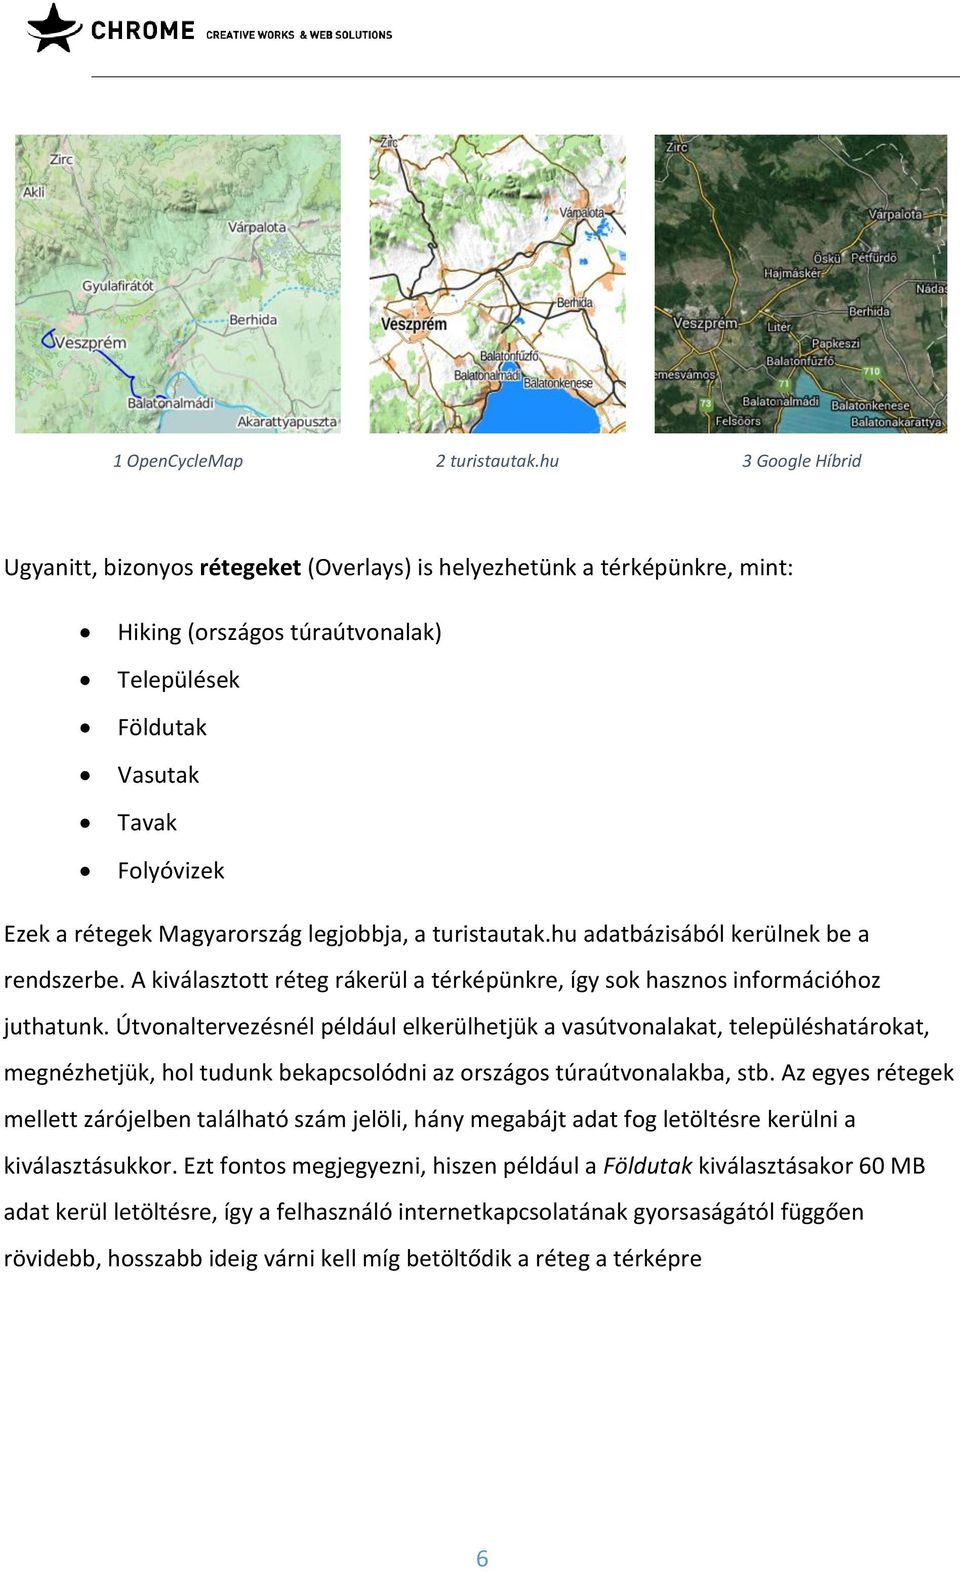 Magyarország legjobbja, a turistautak.hu adatbázisából kerülnek be a rendszerbe. A kiválasztott réteg rákerül a térképünkre, így sok hasznos információhoz juthatunk.